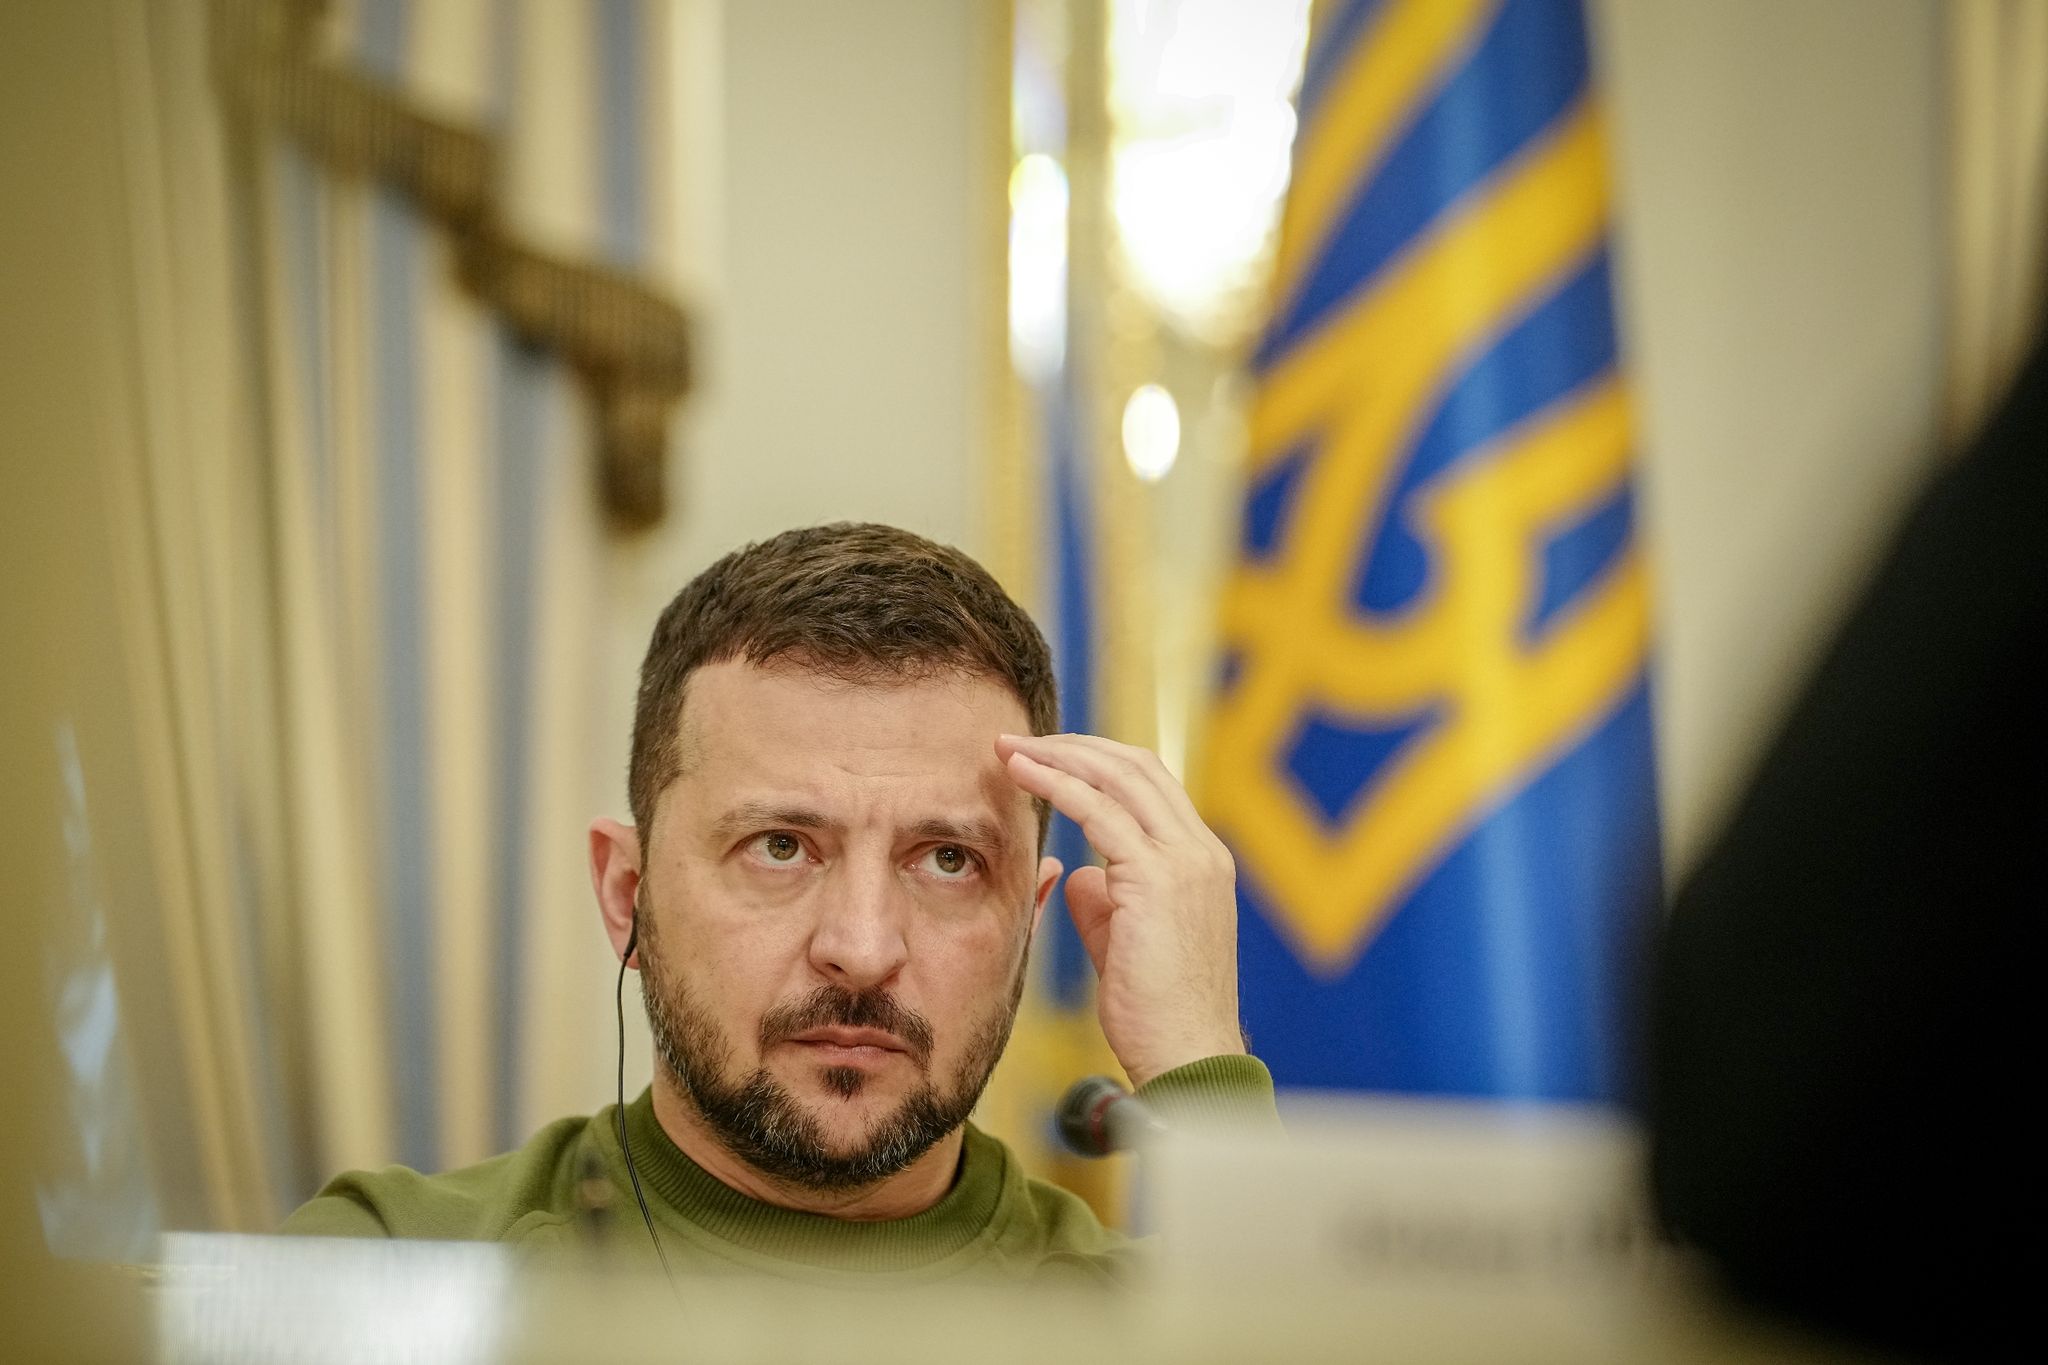 Zwei Mitglieder des Personenschutzes um Wolodymyr Selenskyj, sollen Teil eines geplanten Attentates auf den ukrainischen Präsidenten gewesen sein.